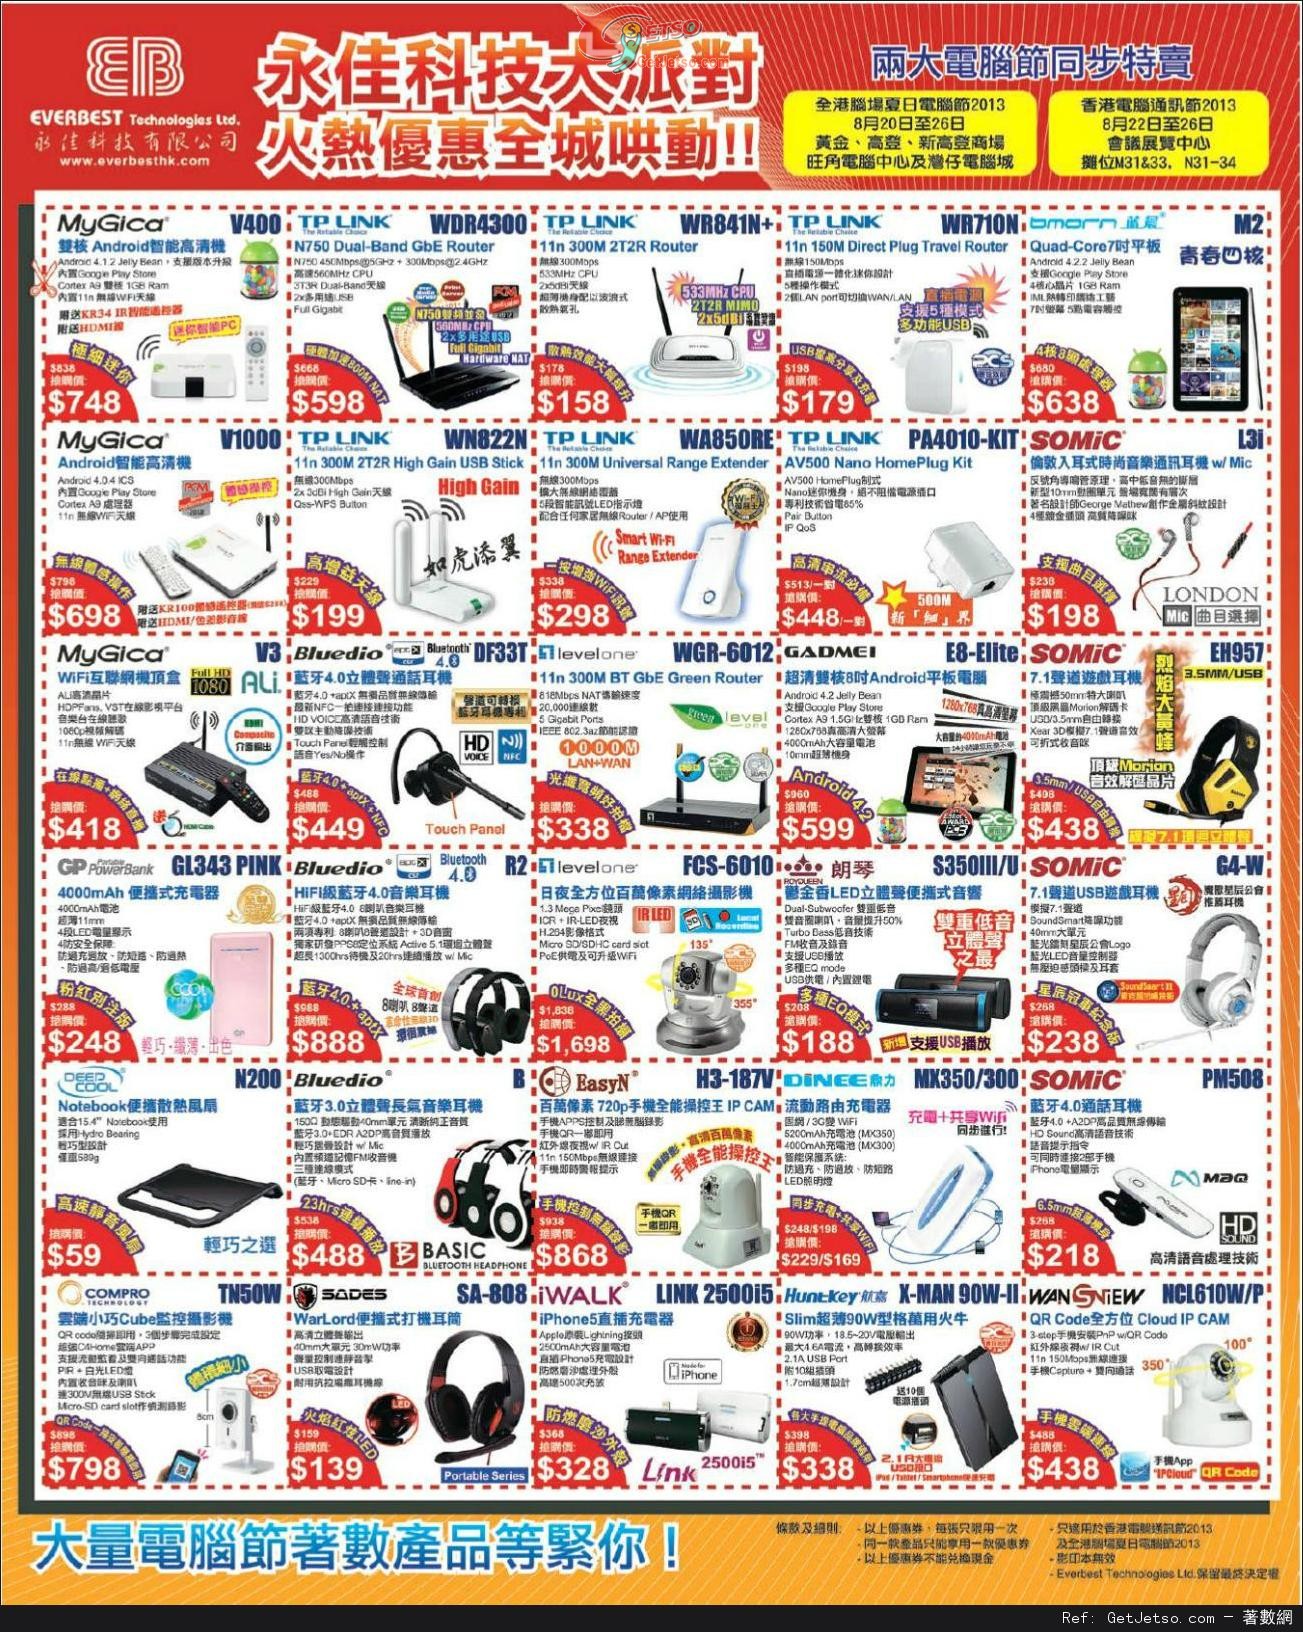 永佳科技電腦節著數產品購買優惠(13年8月20-26日)圖片1